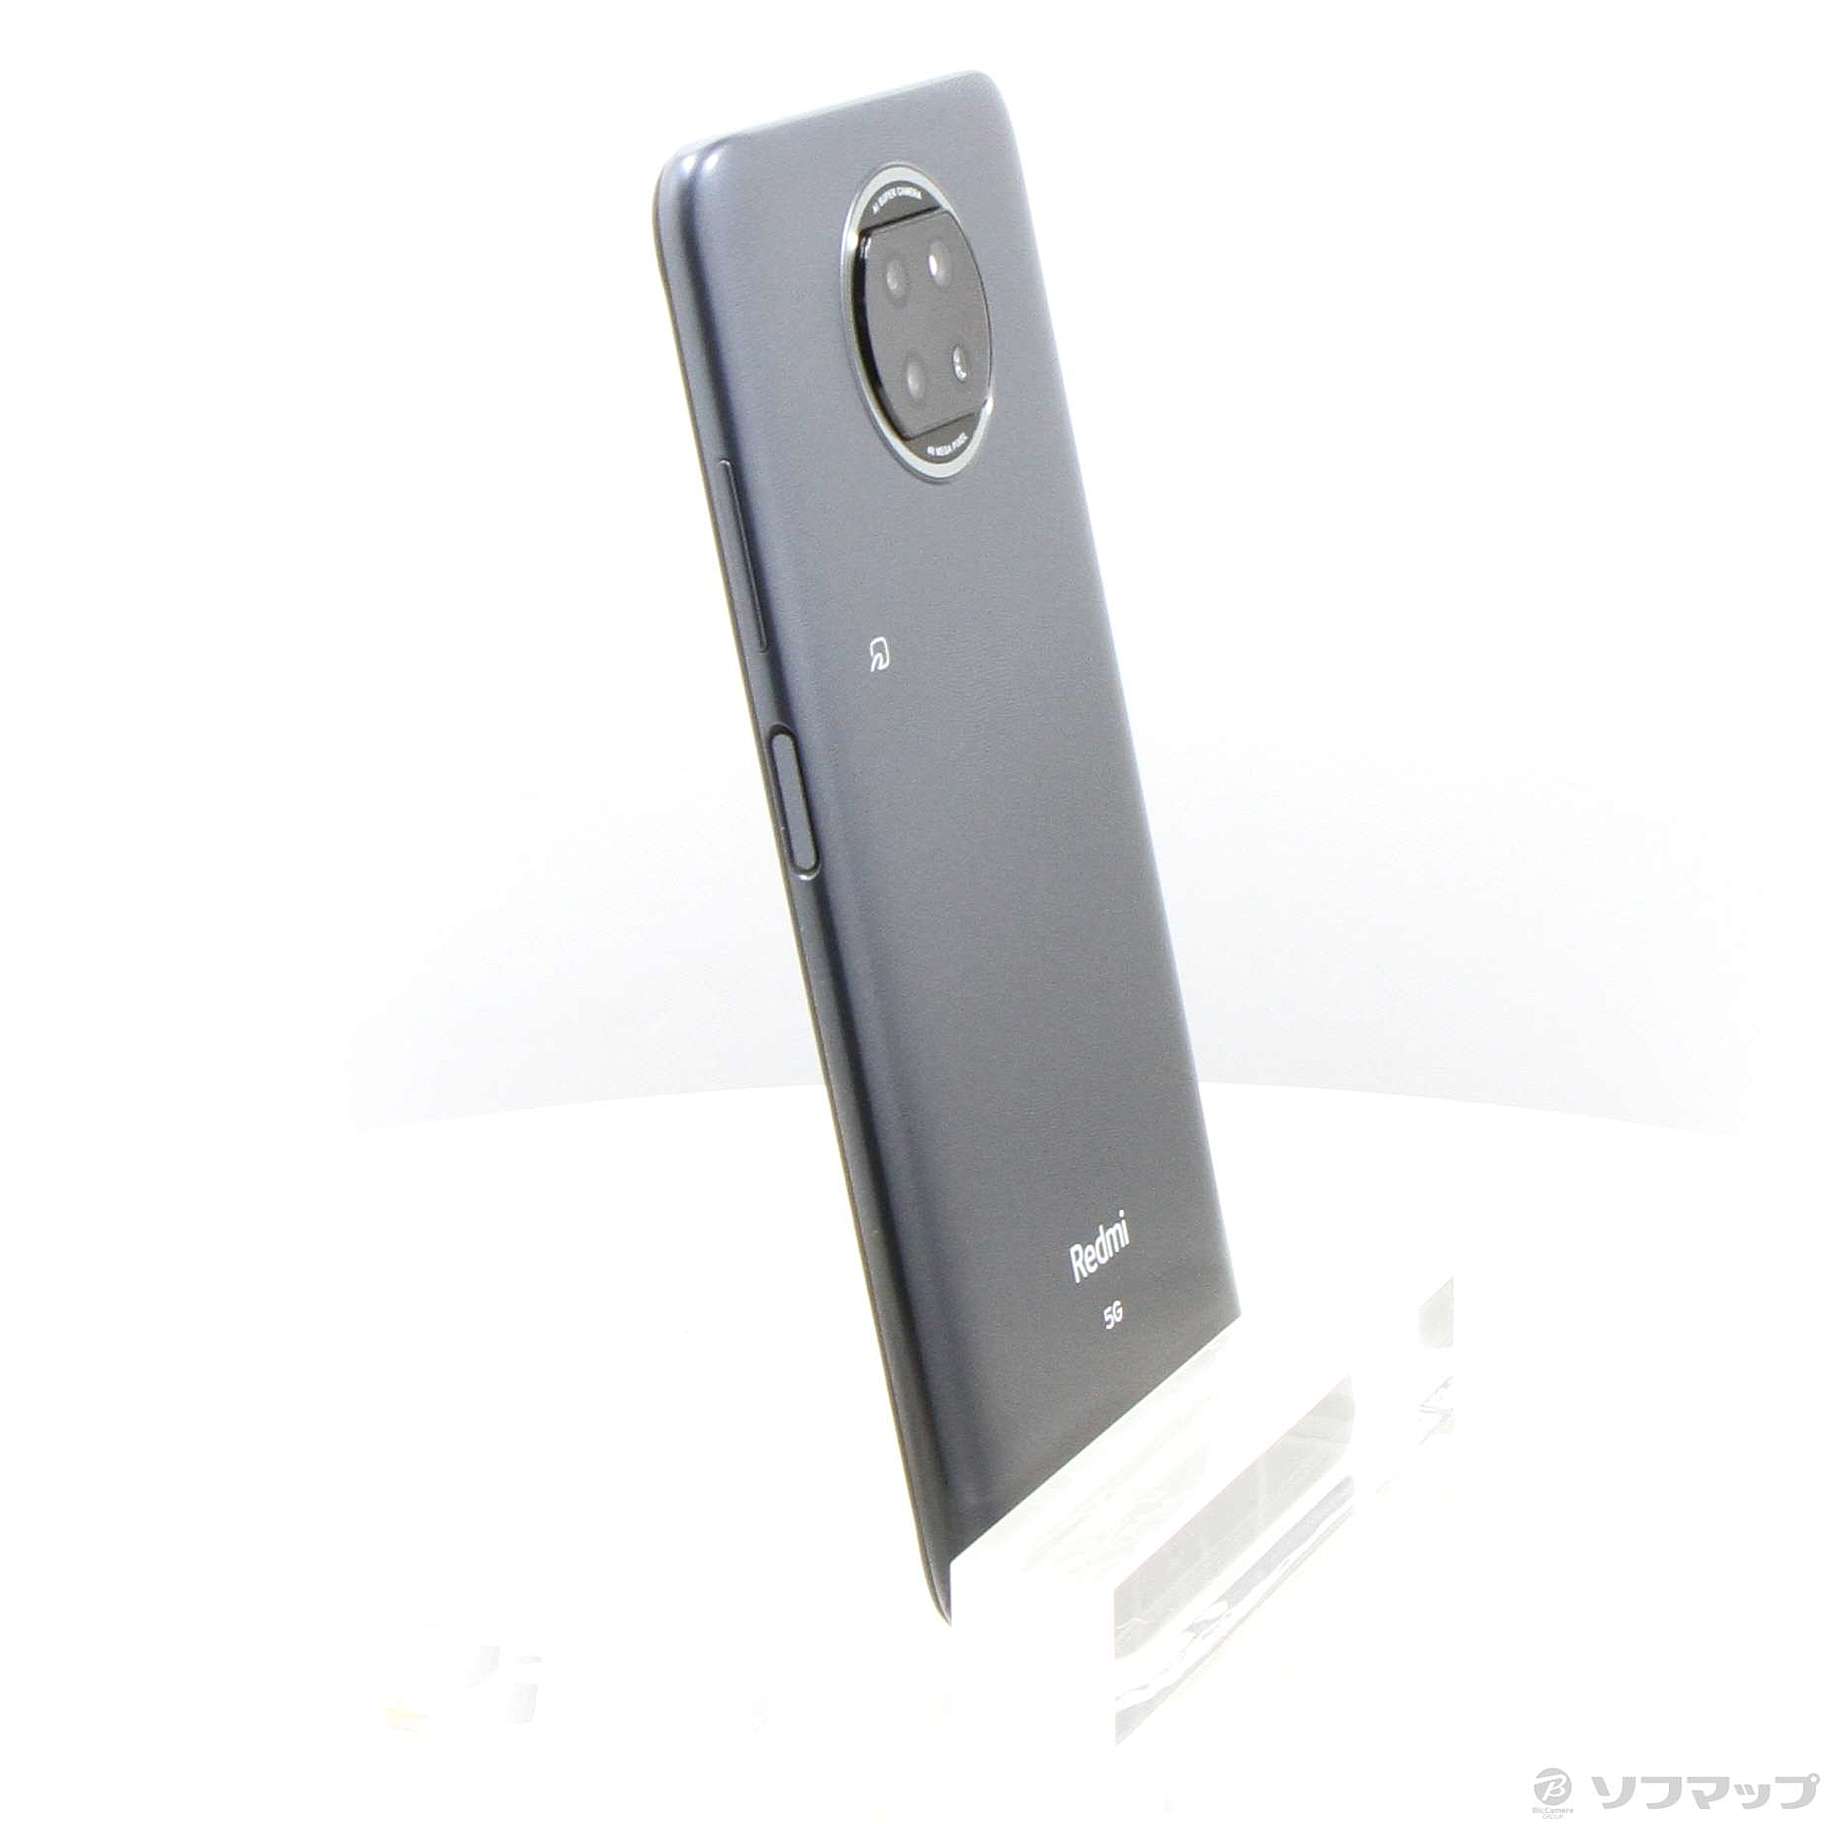 Redmi Note 9T｜価格比較・最新情報 - 価格.com